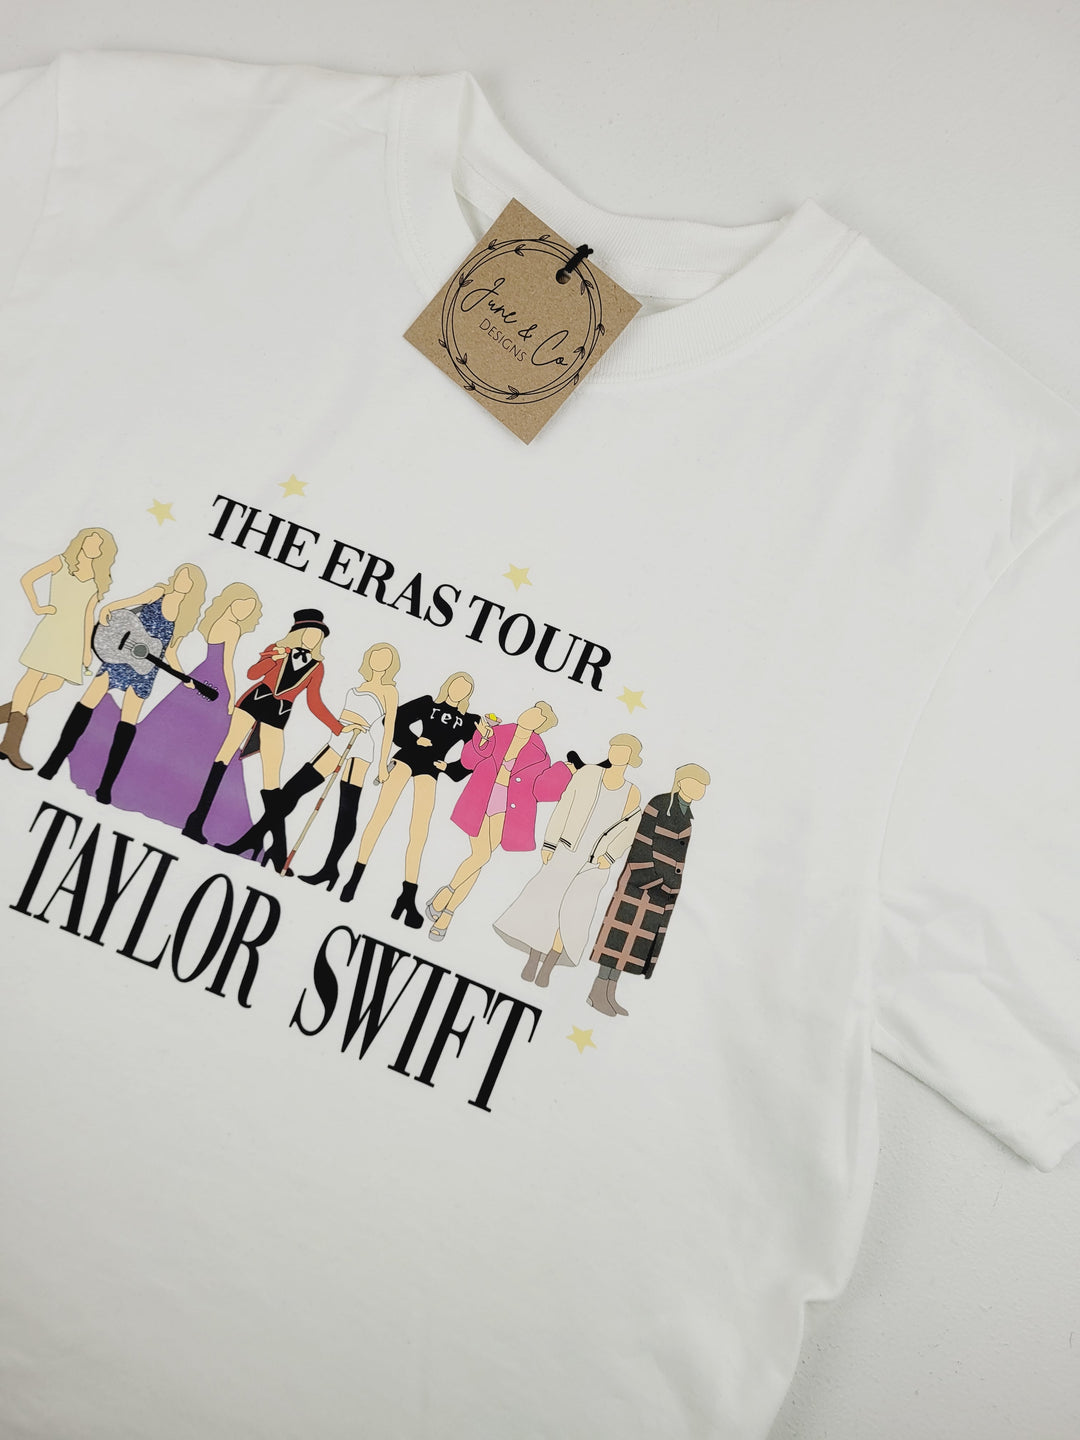 June & Co Designs, The Eras Tour Taylor Swift White T-Shirt